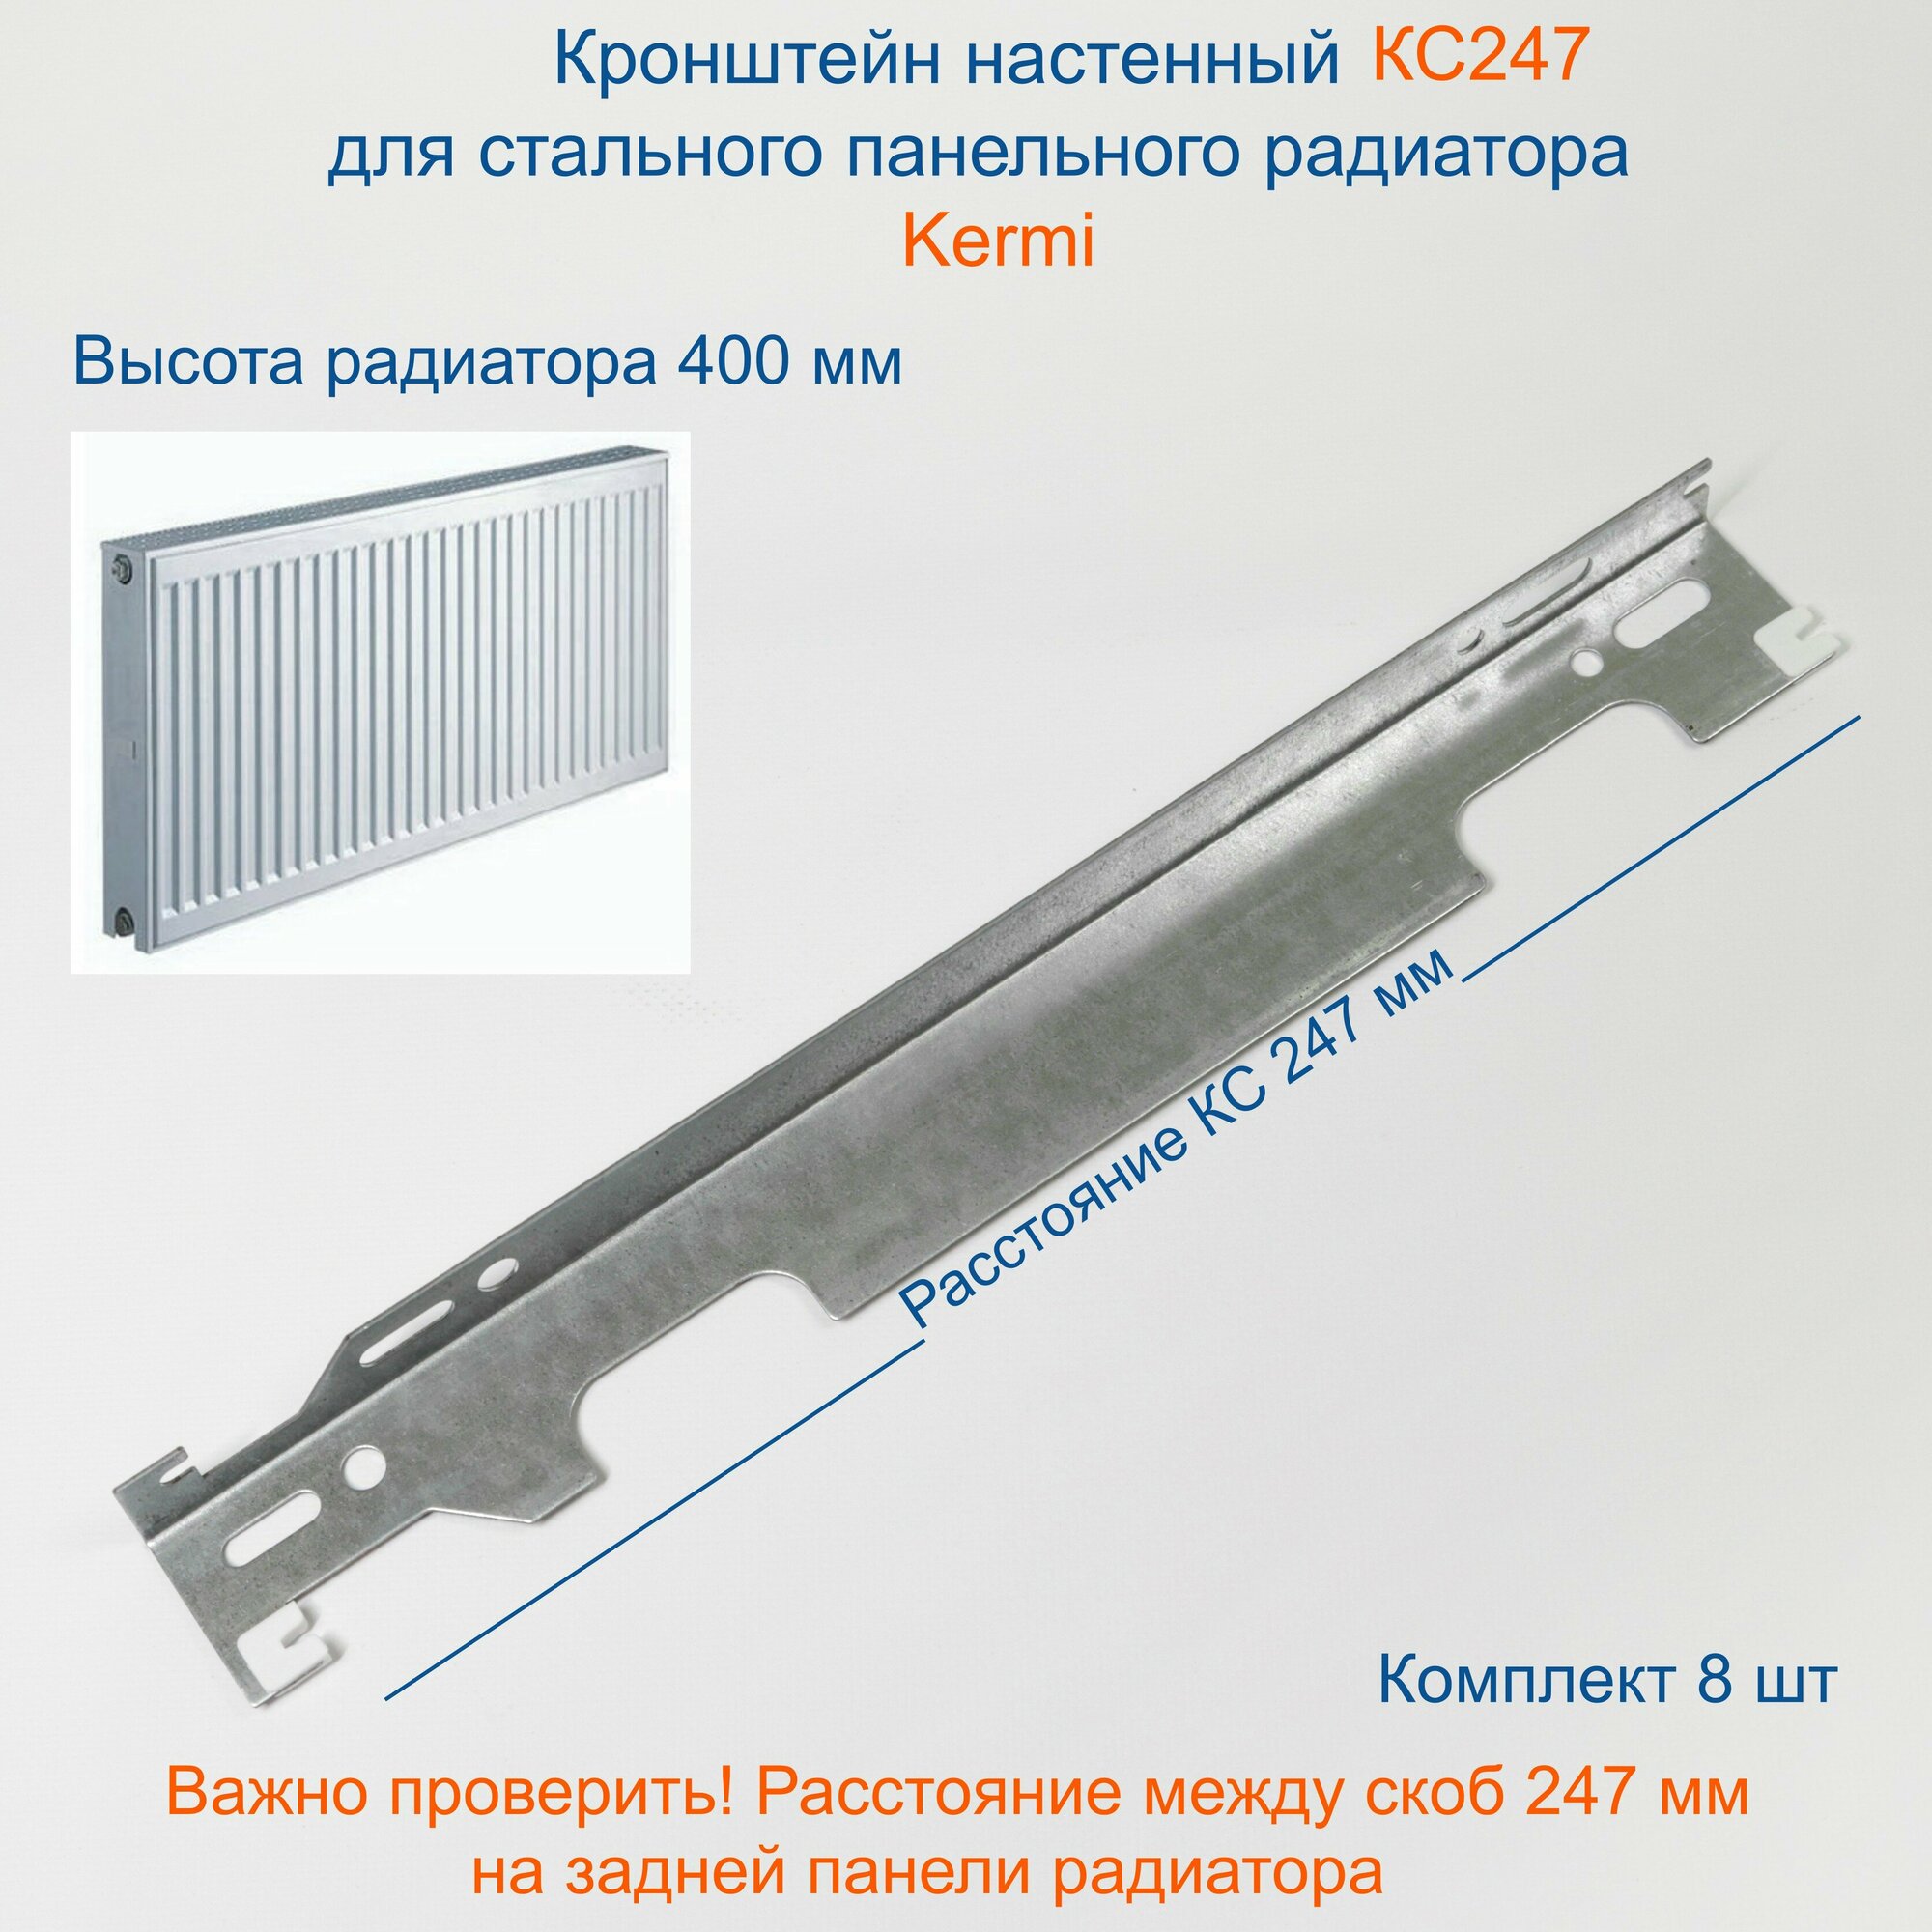 Кронштейн настенный Кайрос для стальных панельных радиаторов Керми 400 мм (комплект 8 шт)